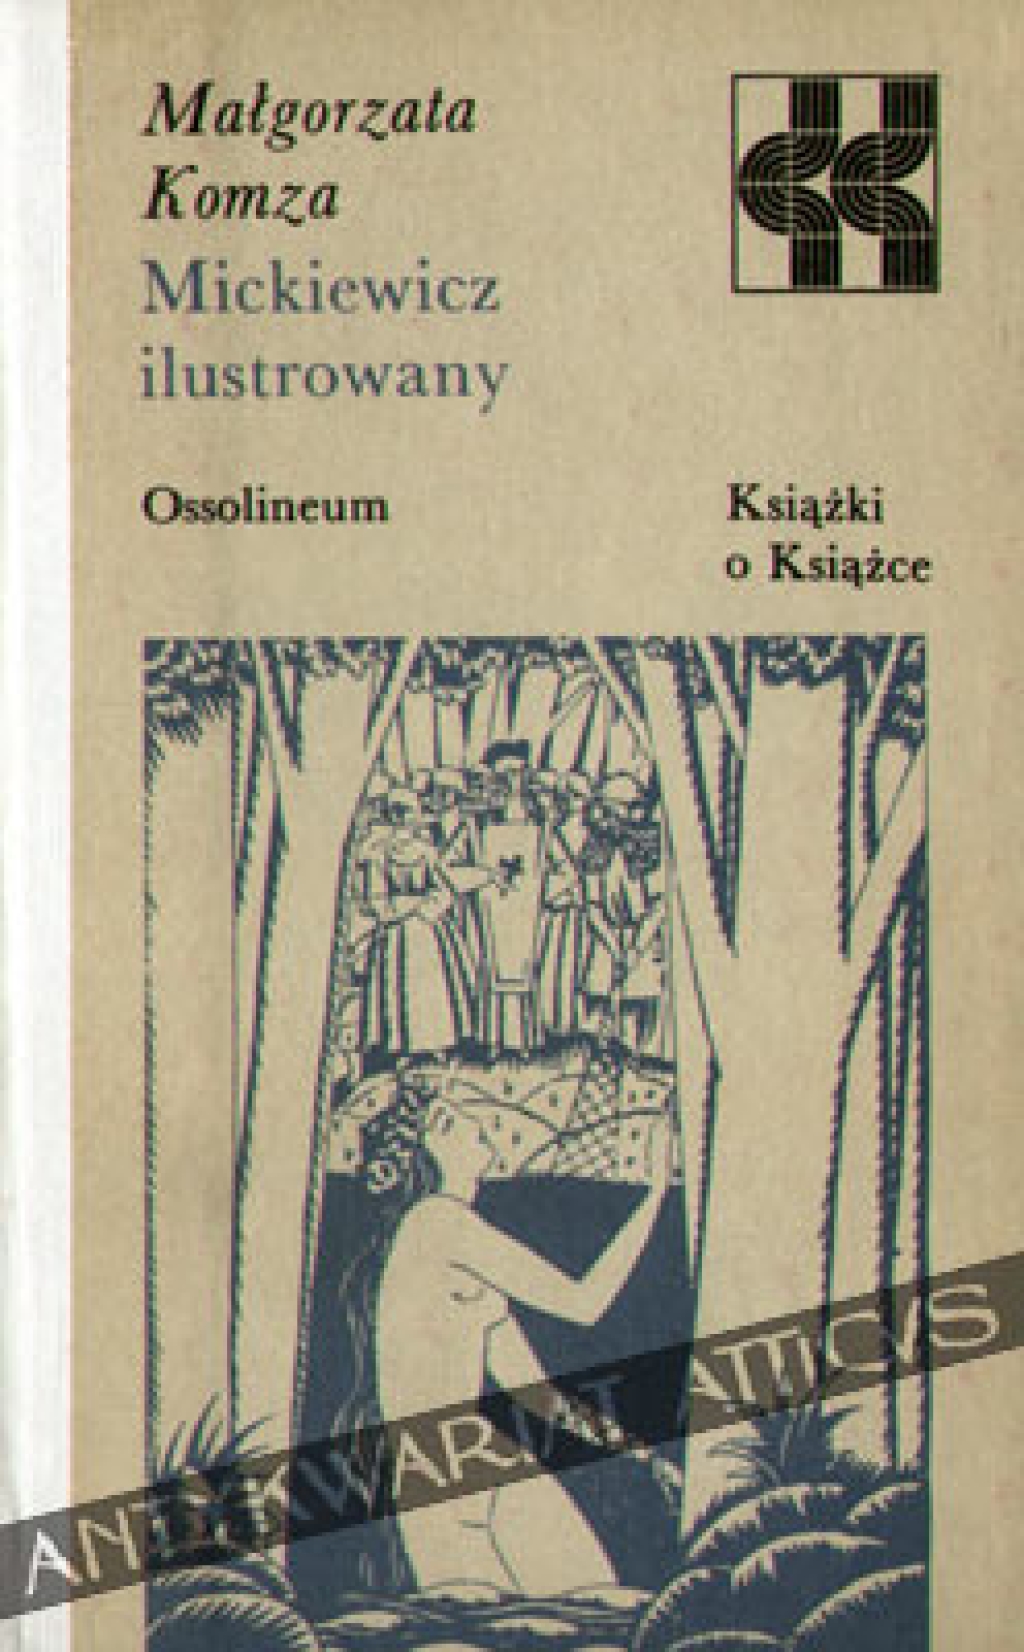 Mickiewicz ilustrowany